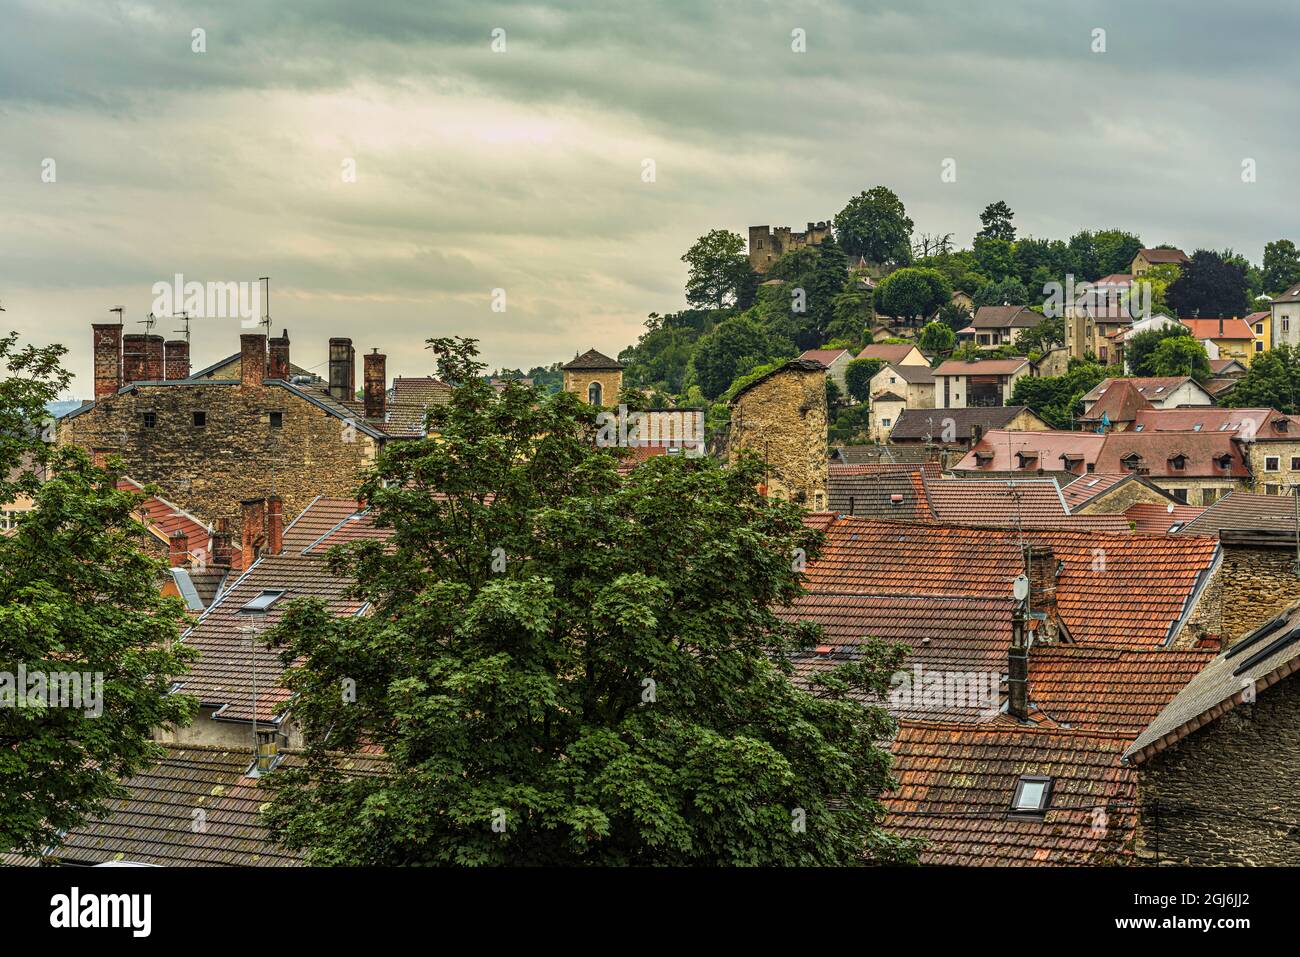 Le vieux village médiéval de Crèmieu avec le château de Dauphin dominant d'en haut. Région Auvergne-Rhône-Alpes, Département de l'Isère, France Banque D'Images